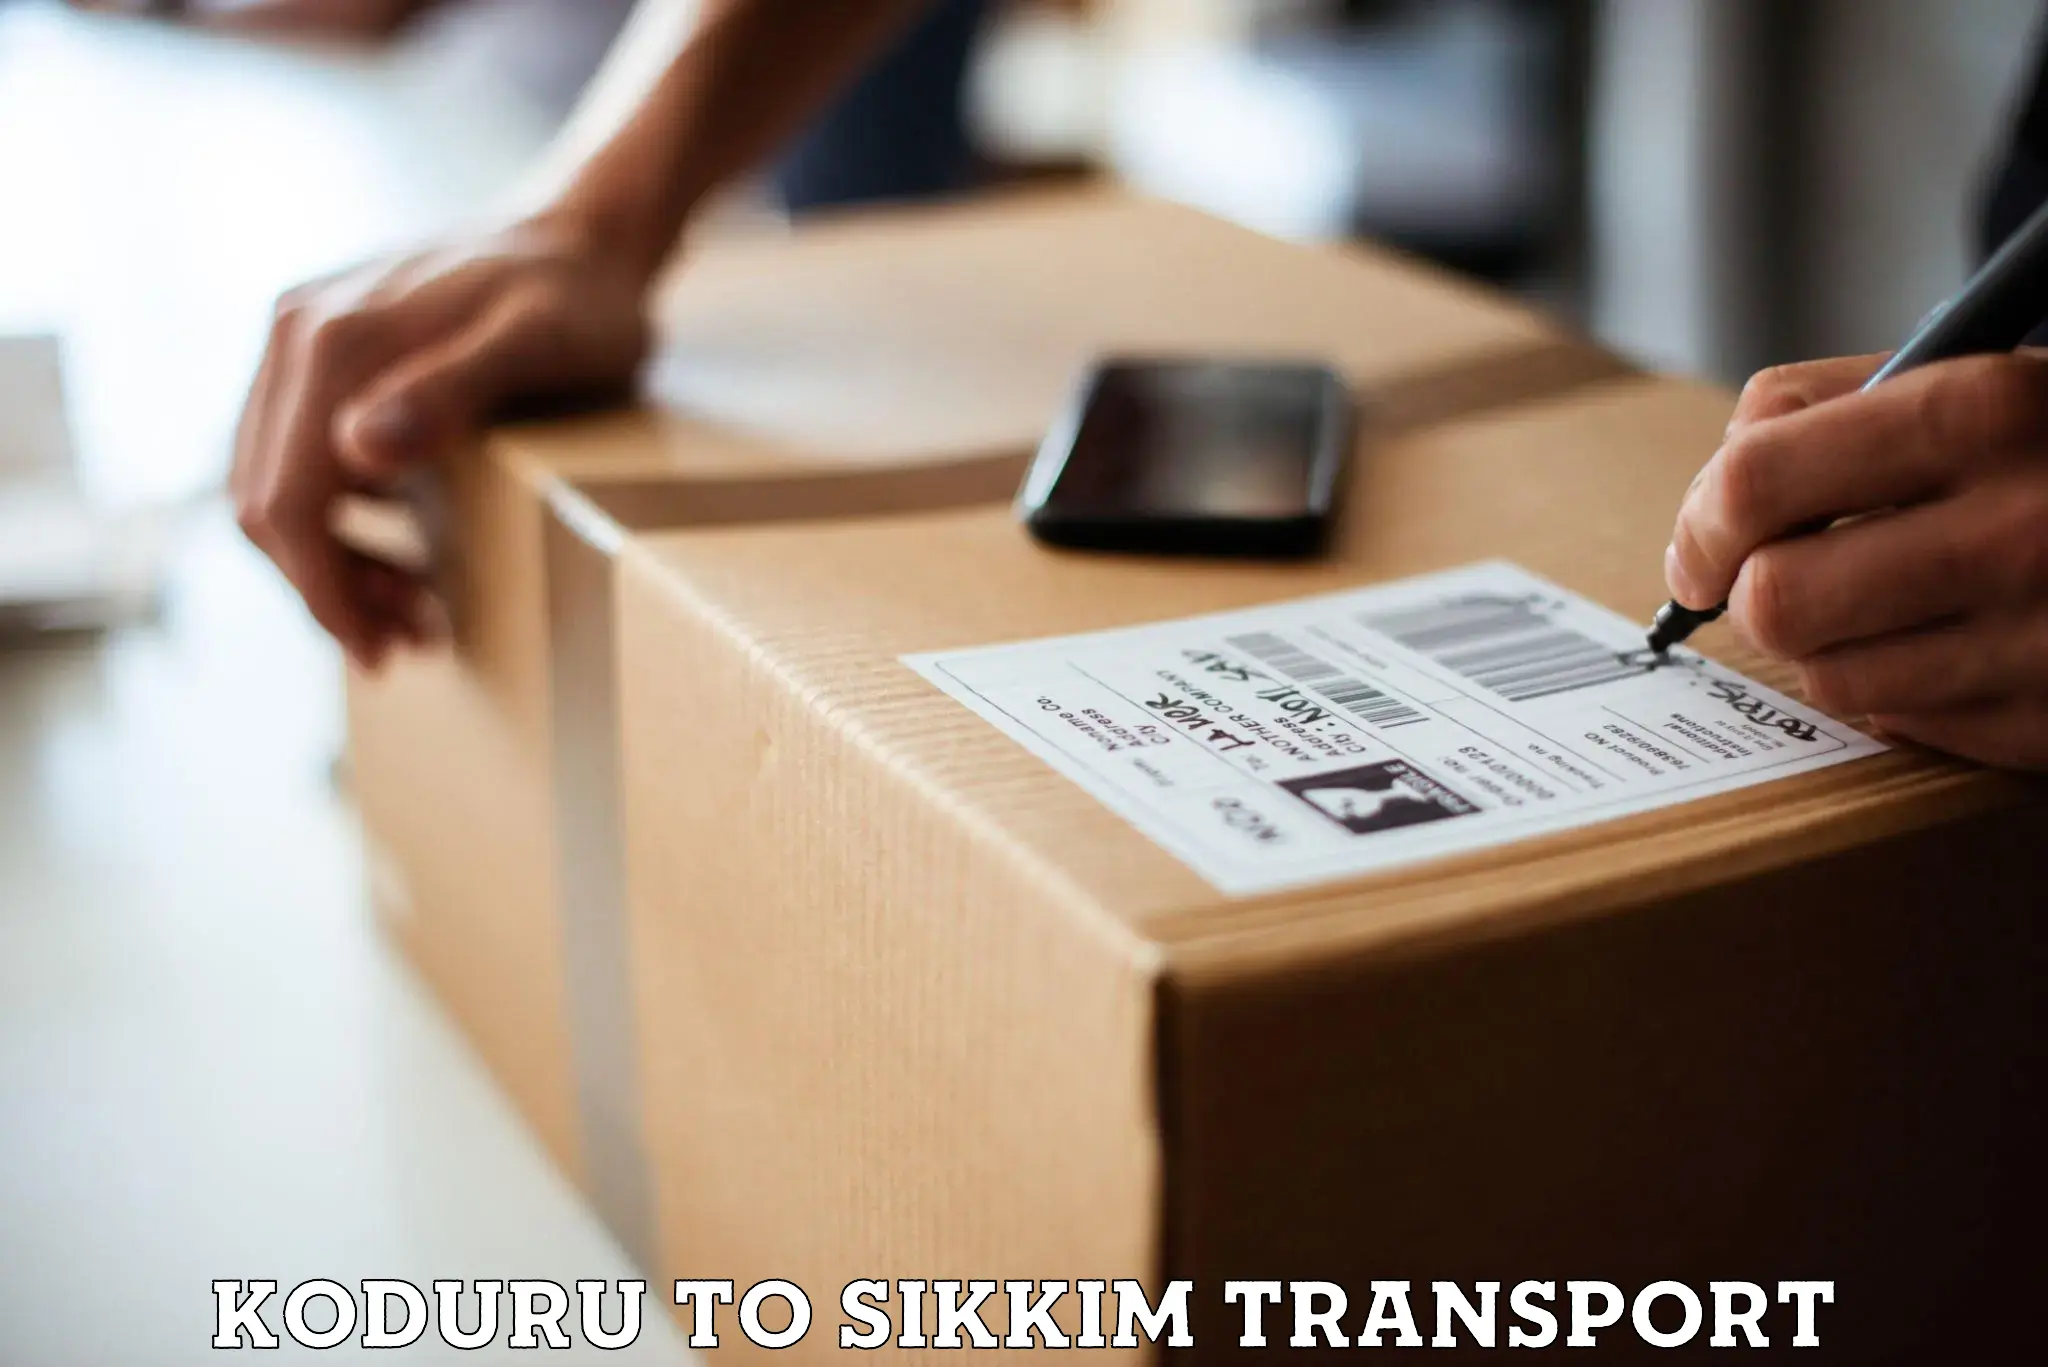 Transport in sharing Koduru to South Sikkim